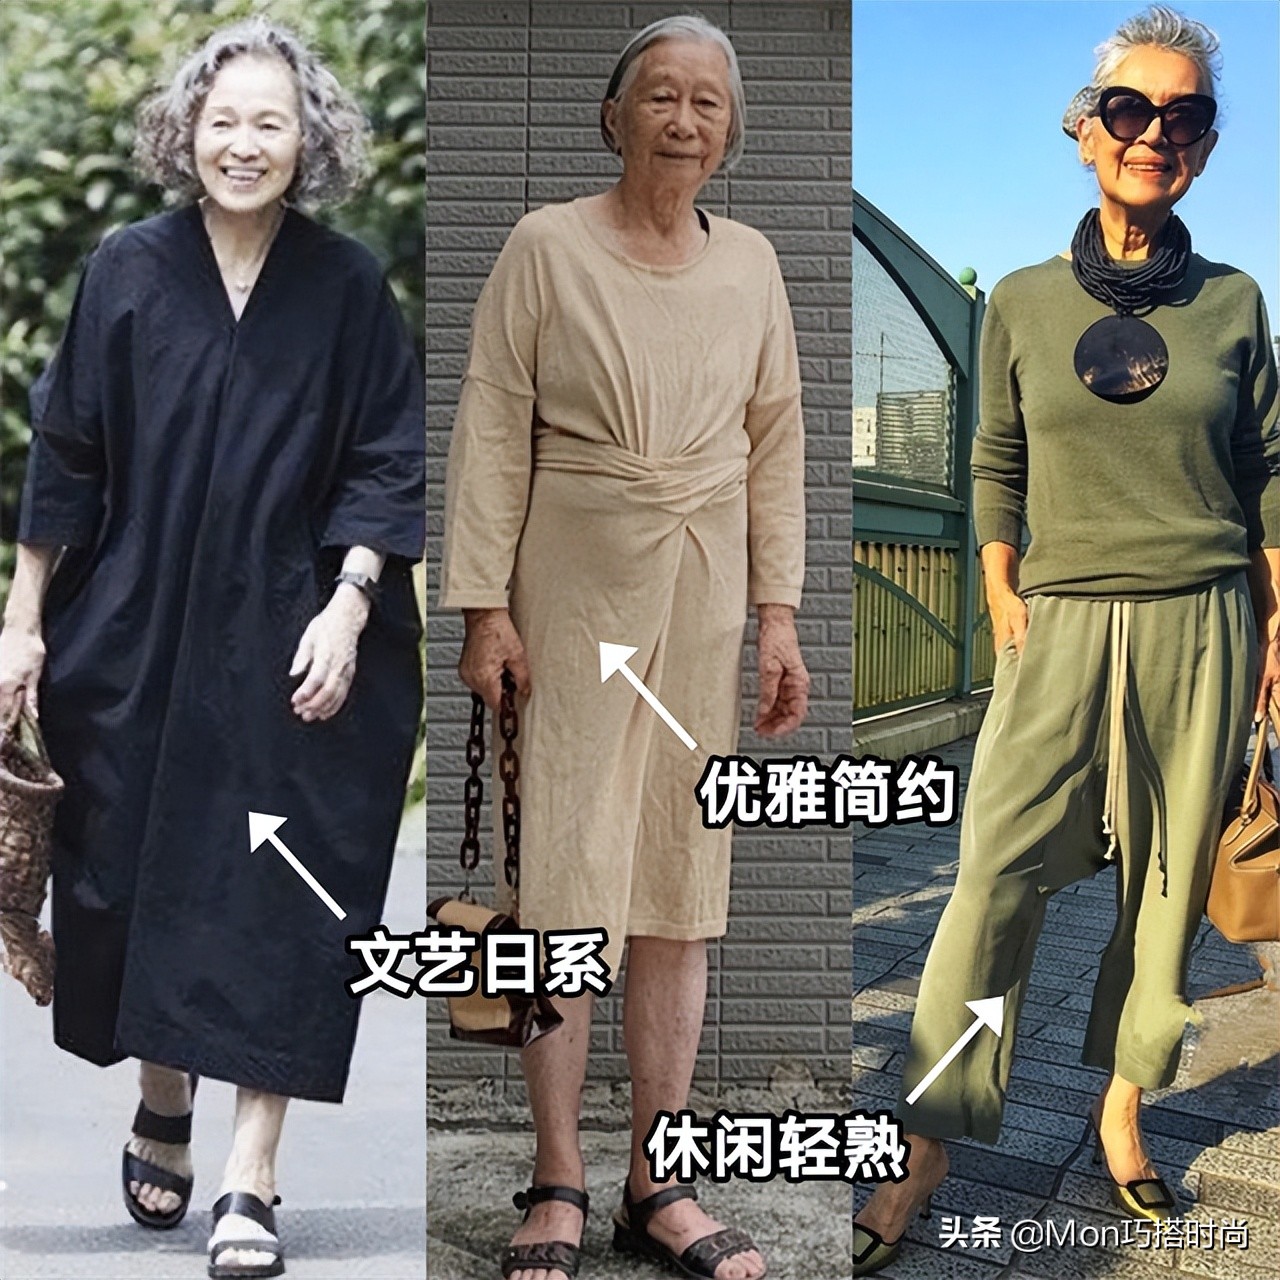 时尚和年龄无关！看这些街拍奶奶就知道：发白、人又老，照样很美